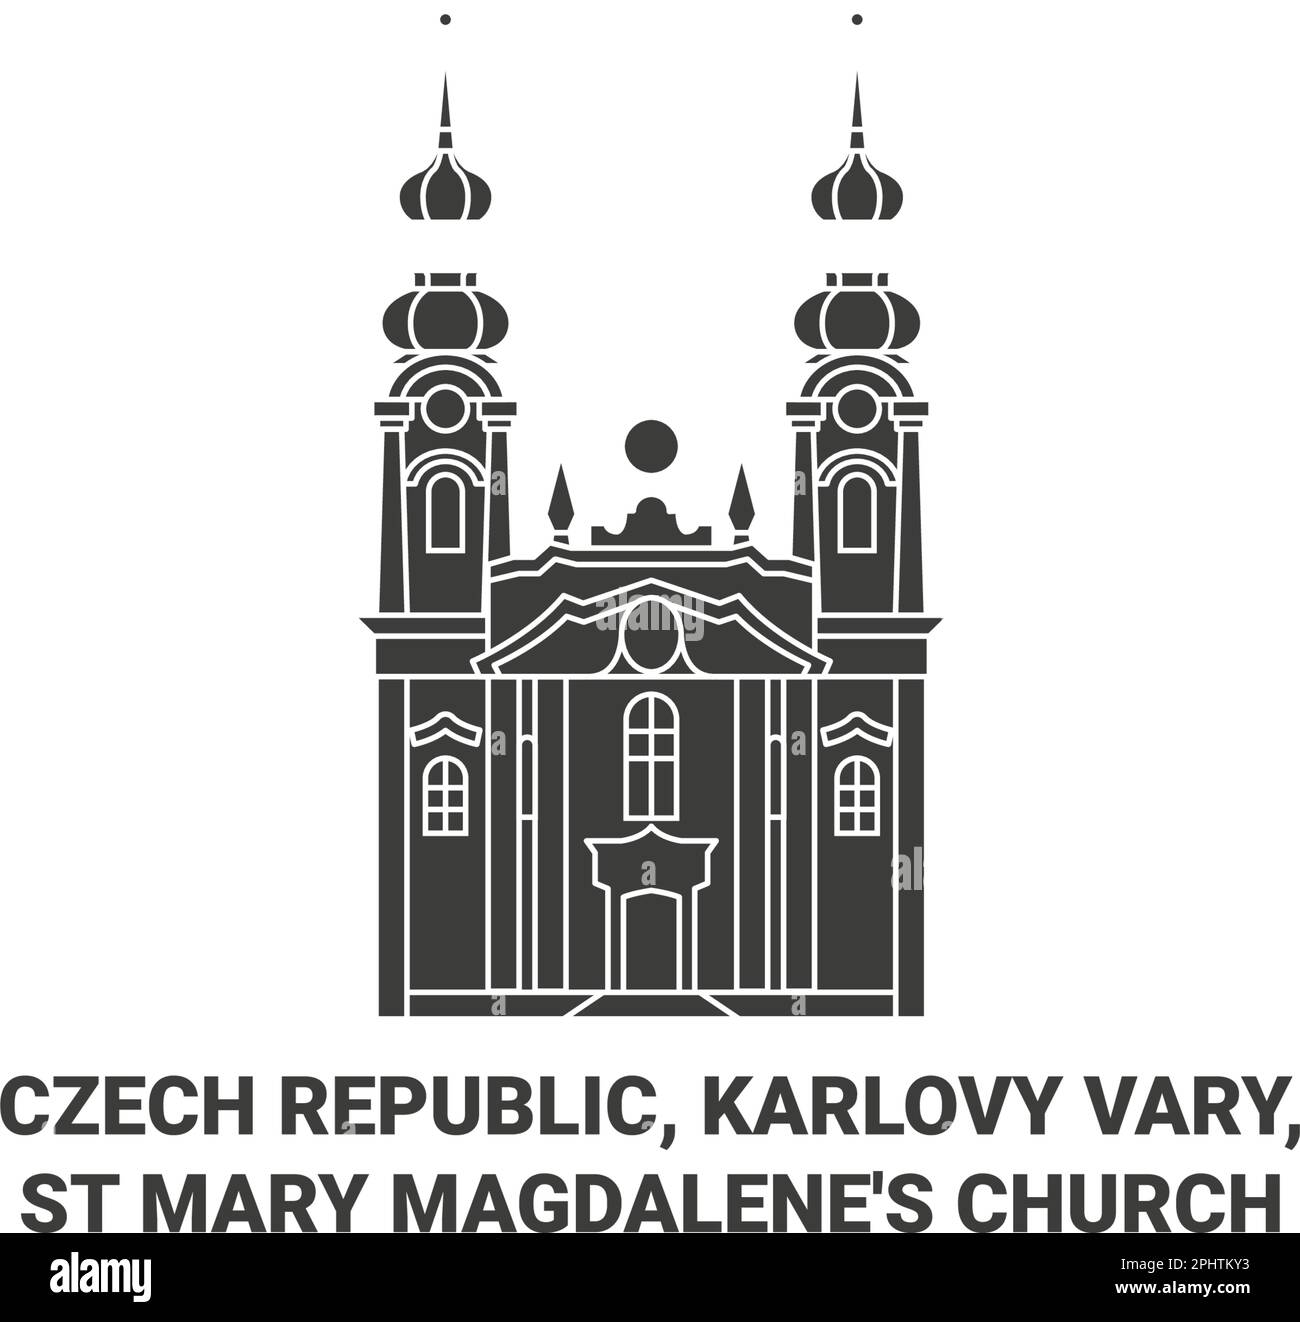 Czech Republic, Karlovy Vary, St Mary Magdalene's Church travel landmark vector illustration Stock Vector